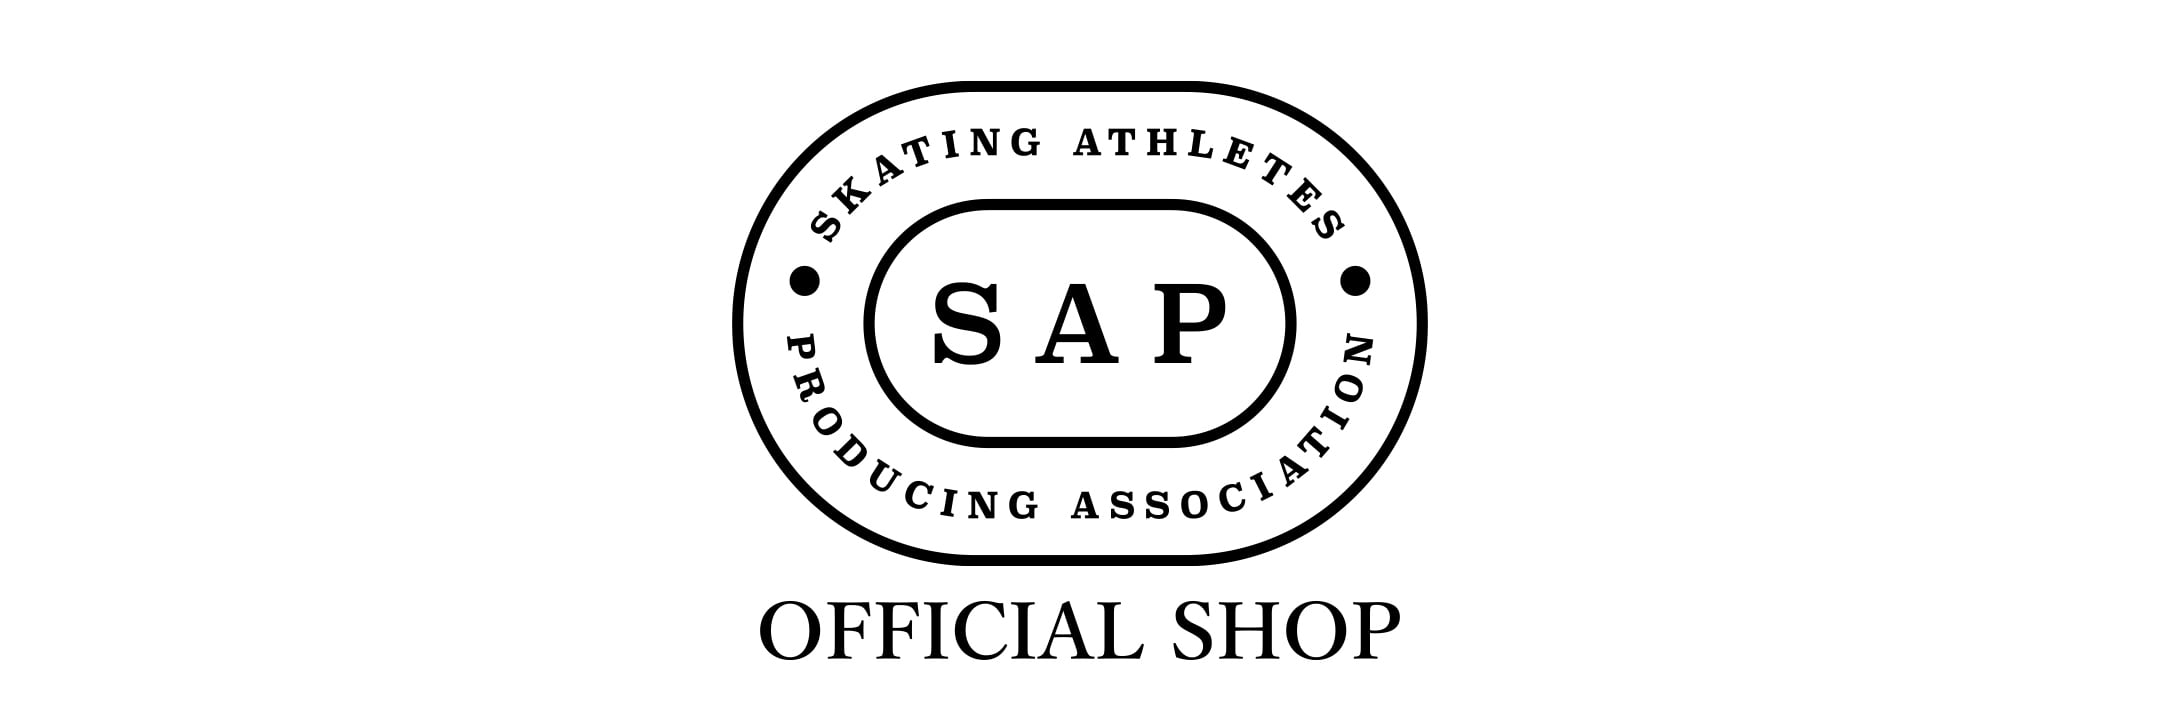 Skating Athletes Producing Association OFFICIAL SHOP